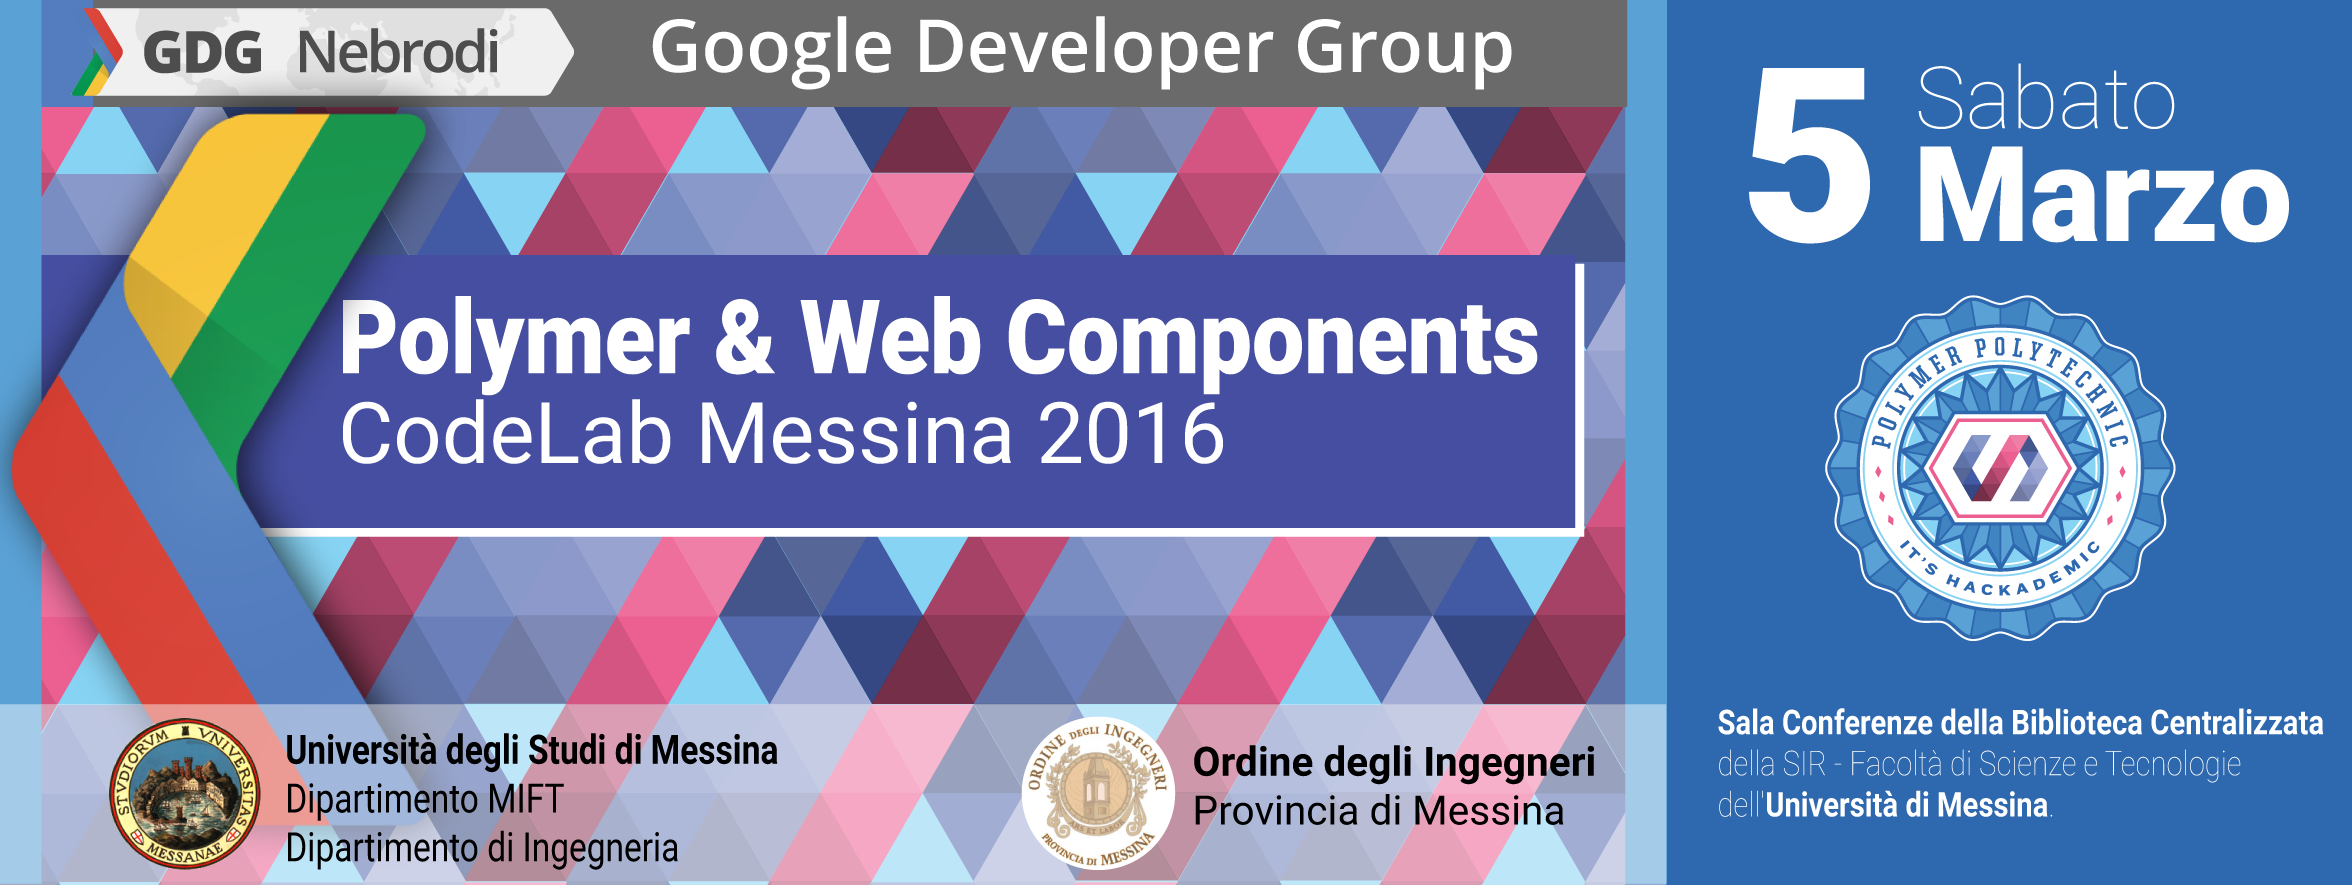 Polymer Sicilia 2016 Messina - Google GDG Nebrodi